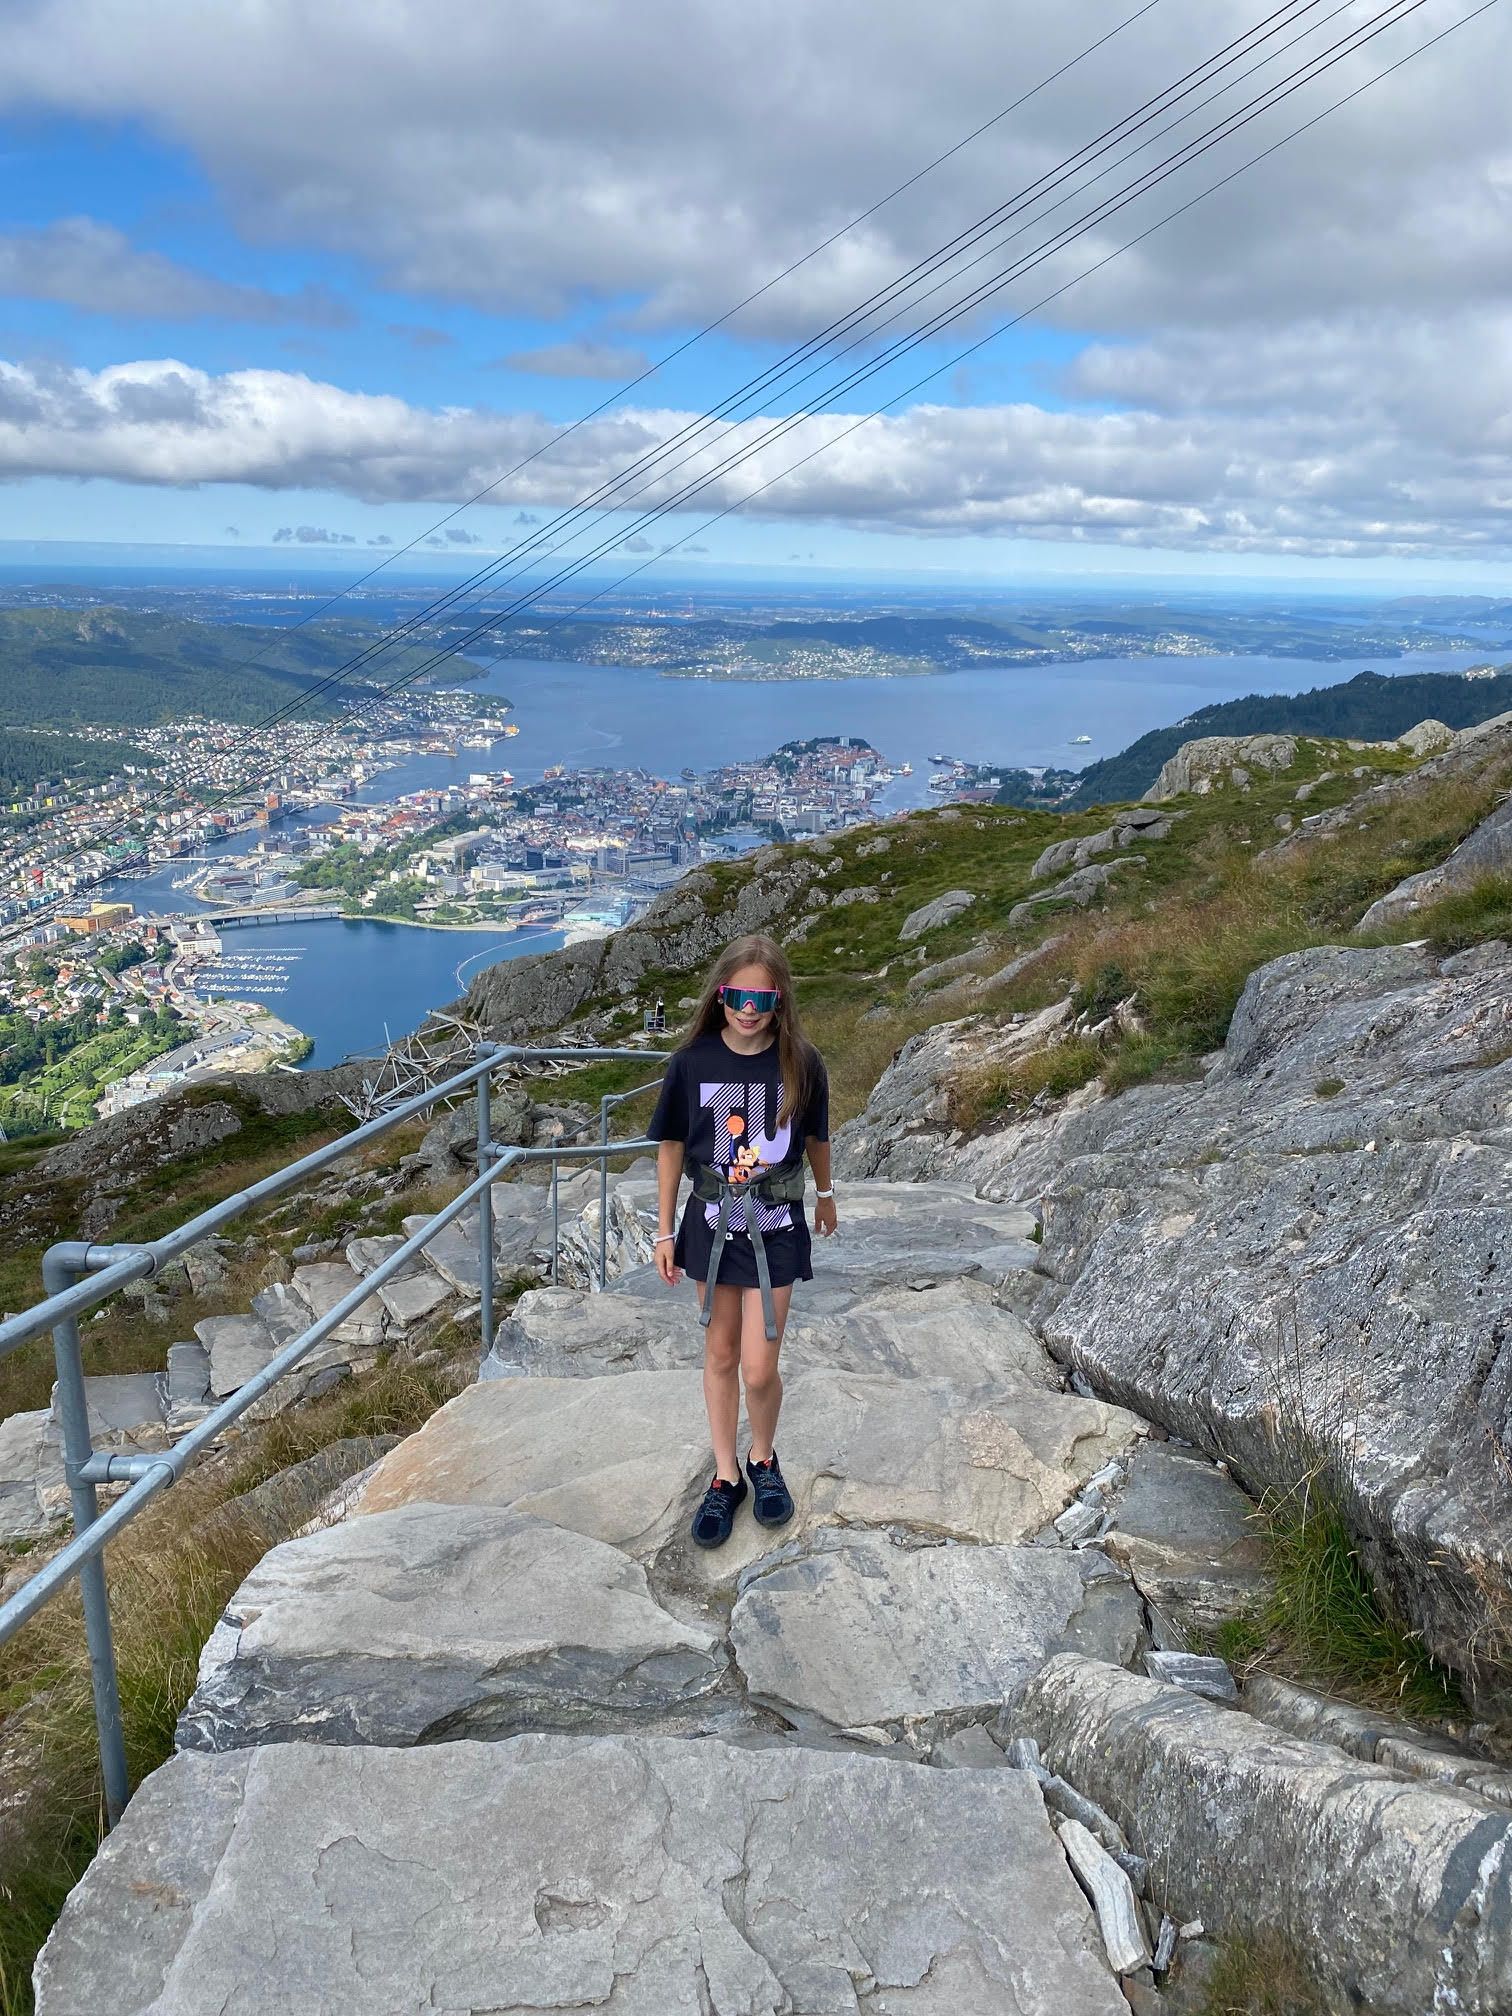 En jente med shorts og raske briller går opp steintrapper med utsikt over gondolbanen til Ulriken, med Bergen by og sjøen i bakgrunnen.